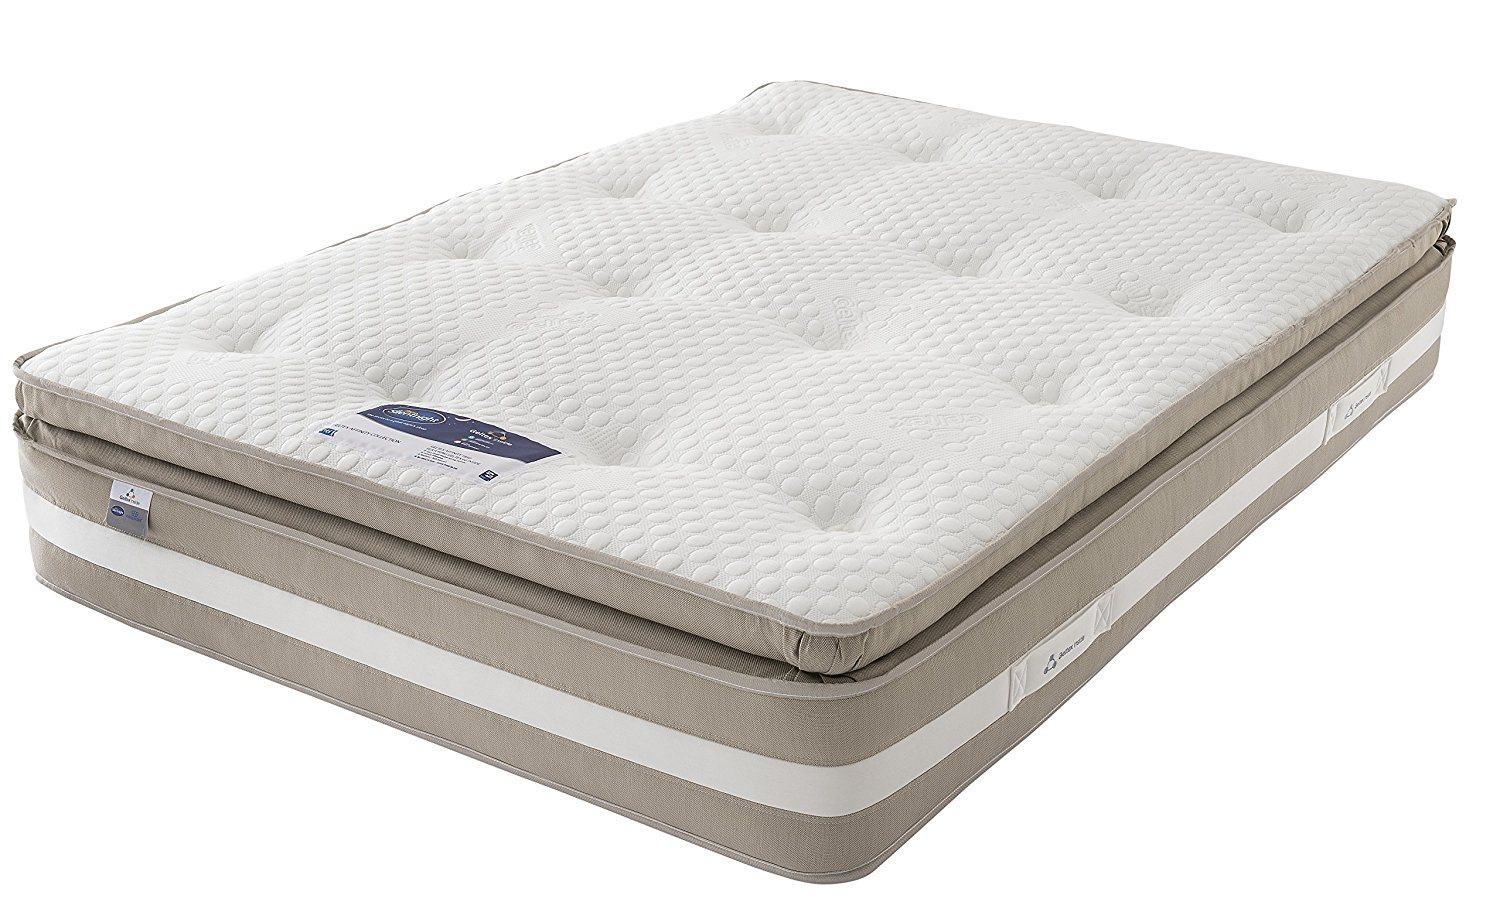 silent night mattress topper ireland